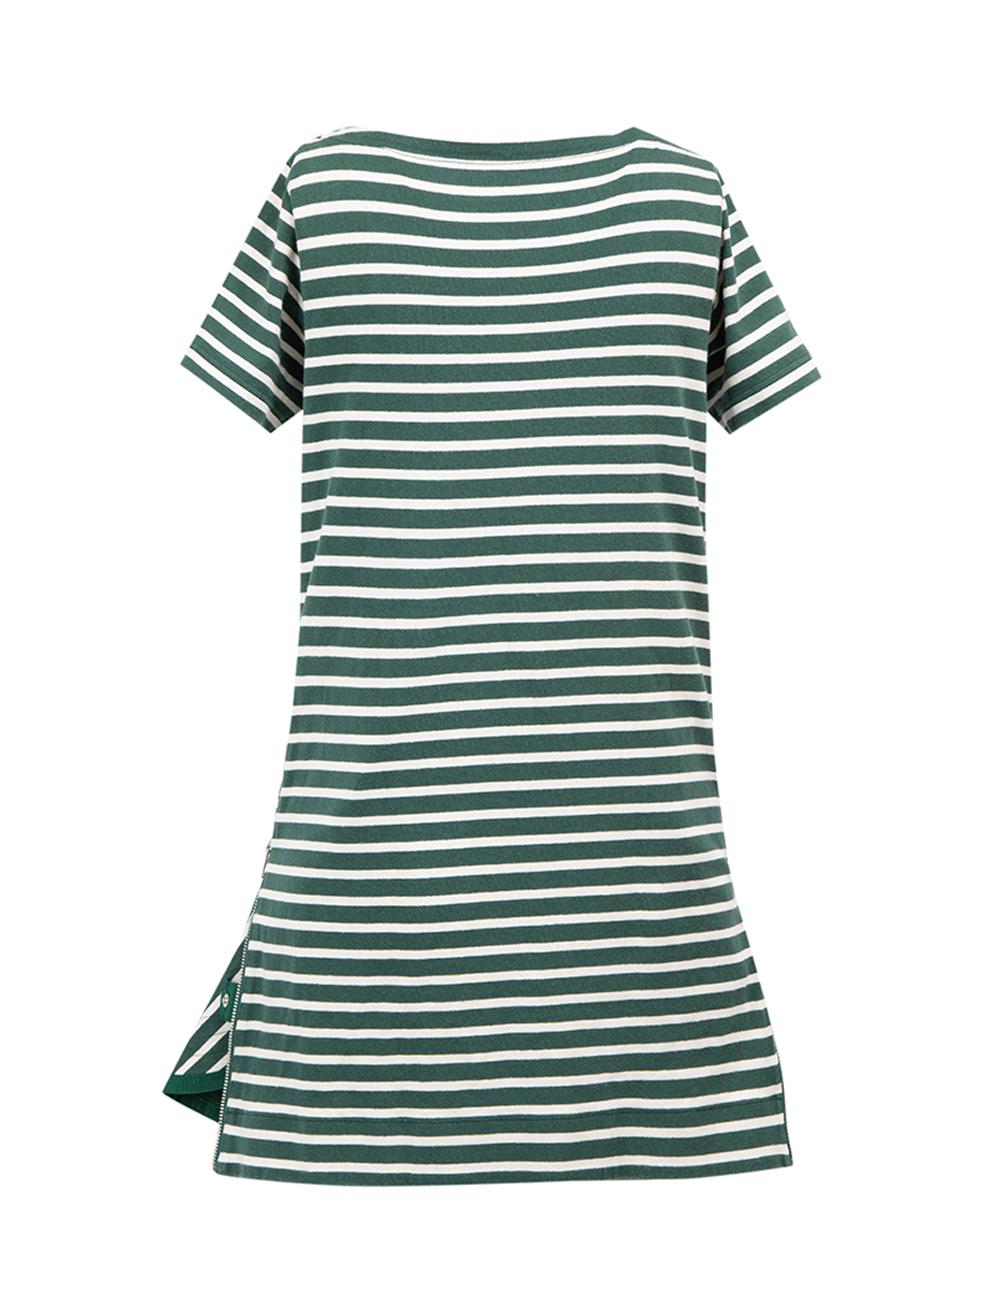 Grün-weiß gestreiftes Baumwollkleid mit Reißverschluss Größe S (Grau) im Angebot